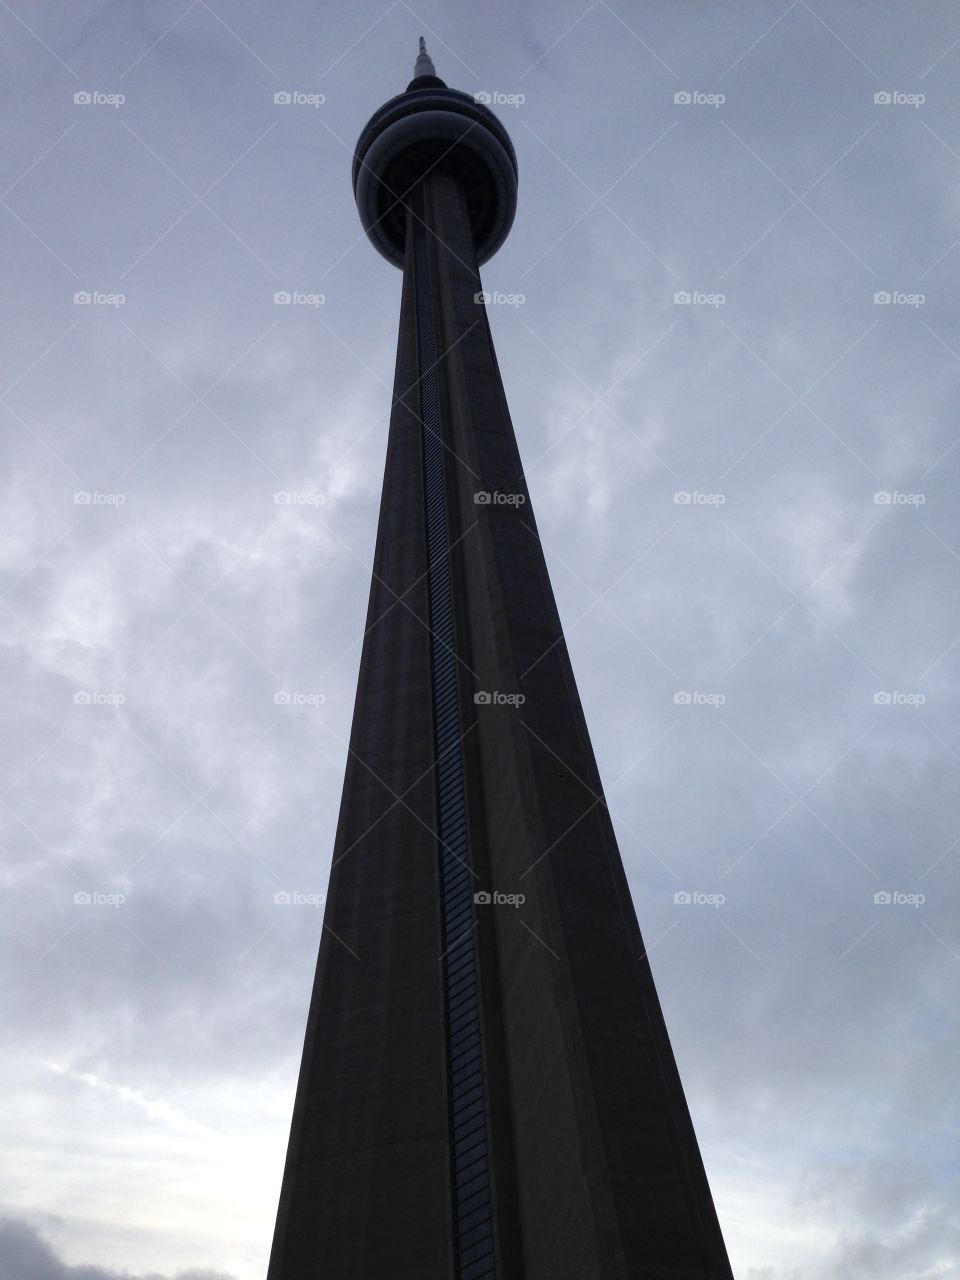 Toronto's CN Tower. Toronto's CN Tower